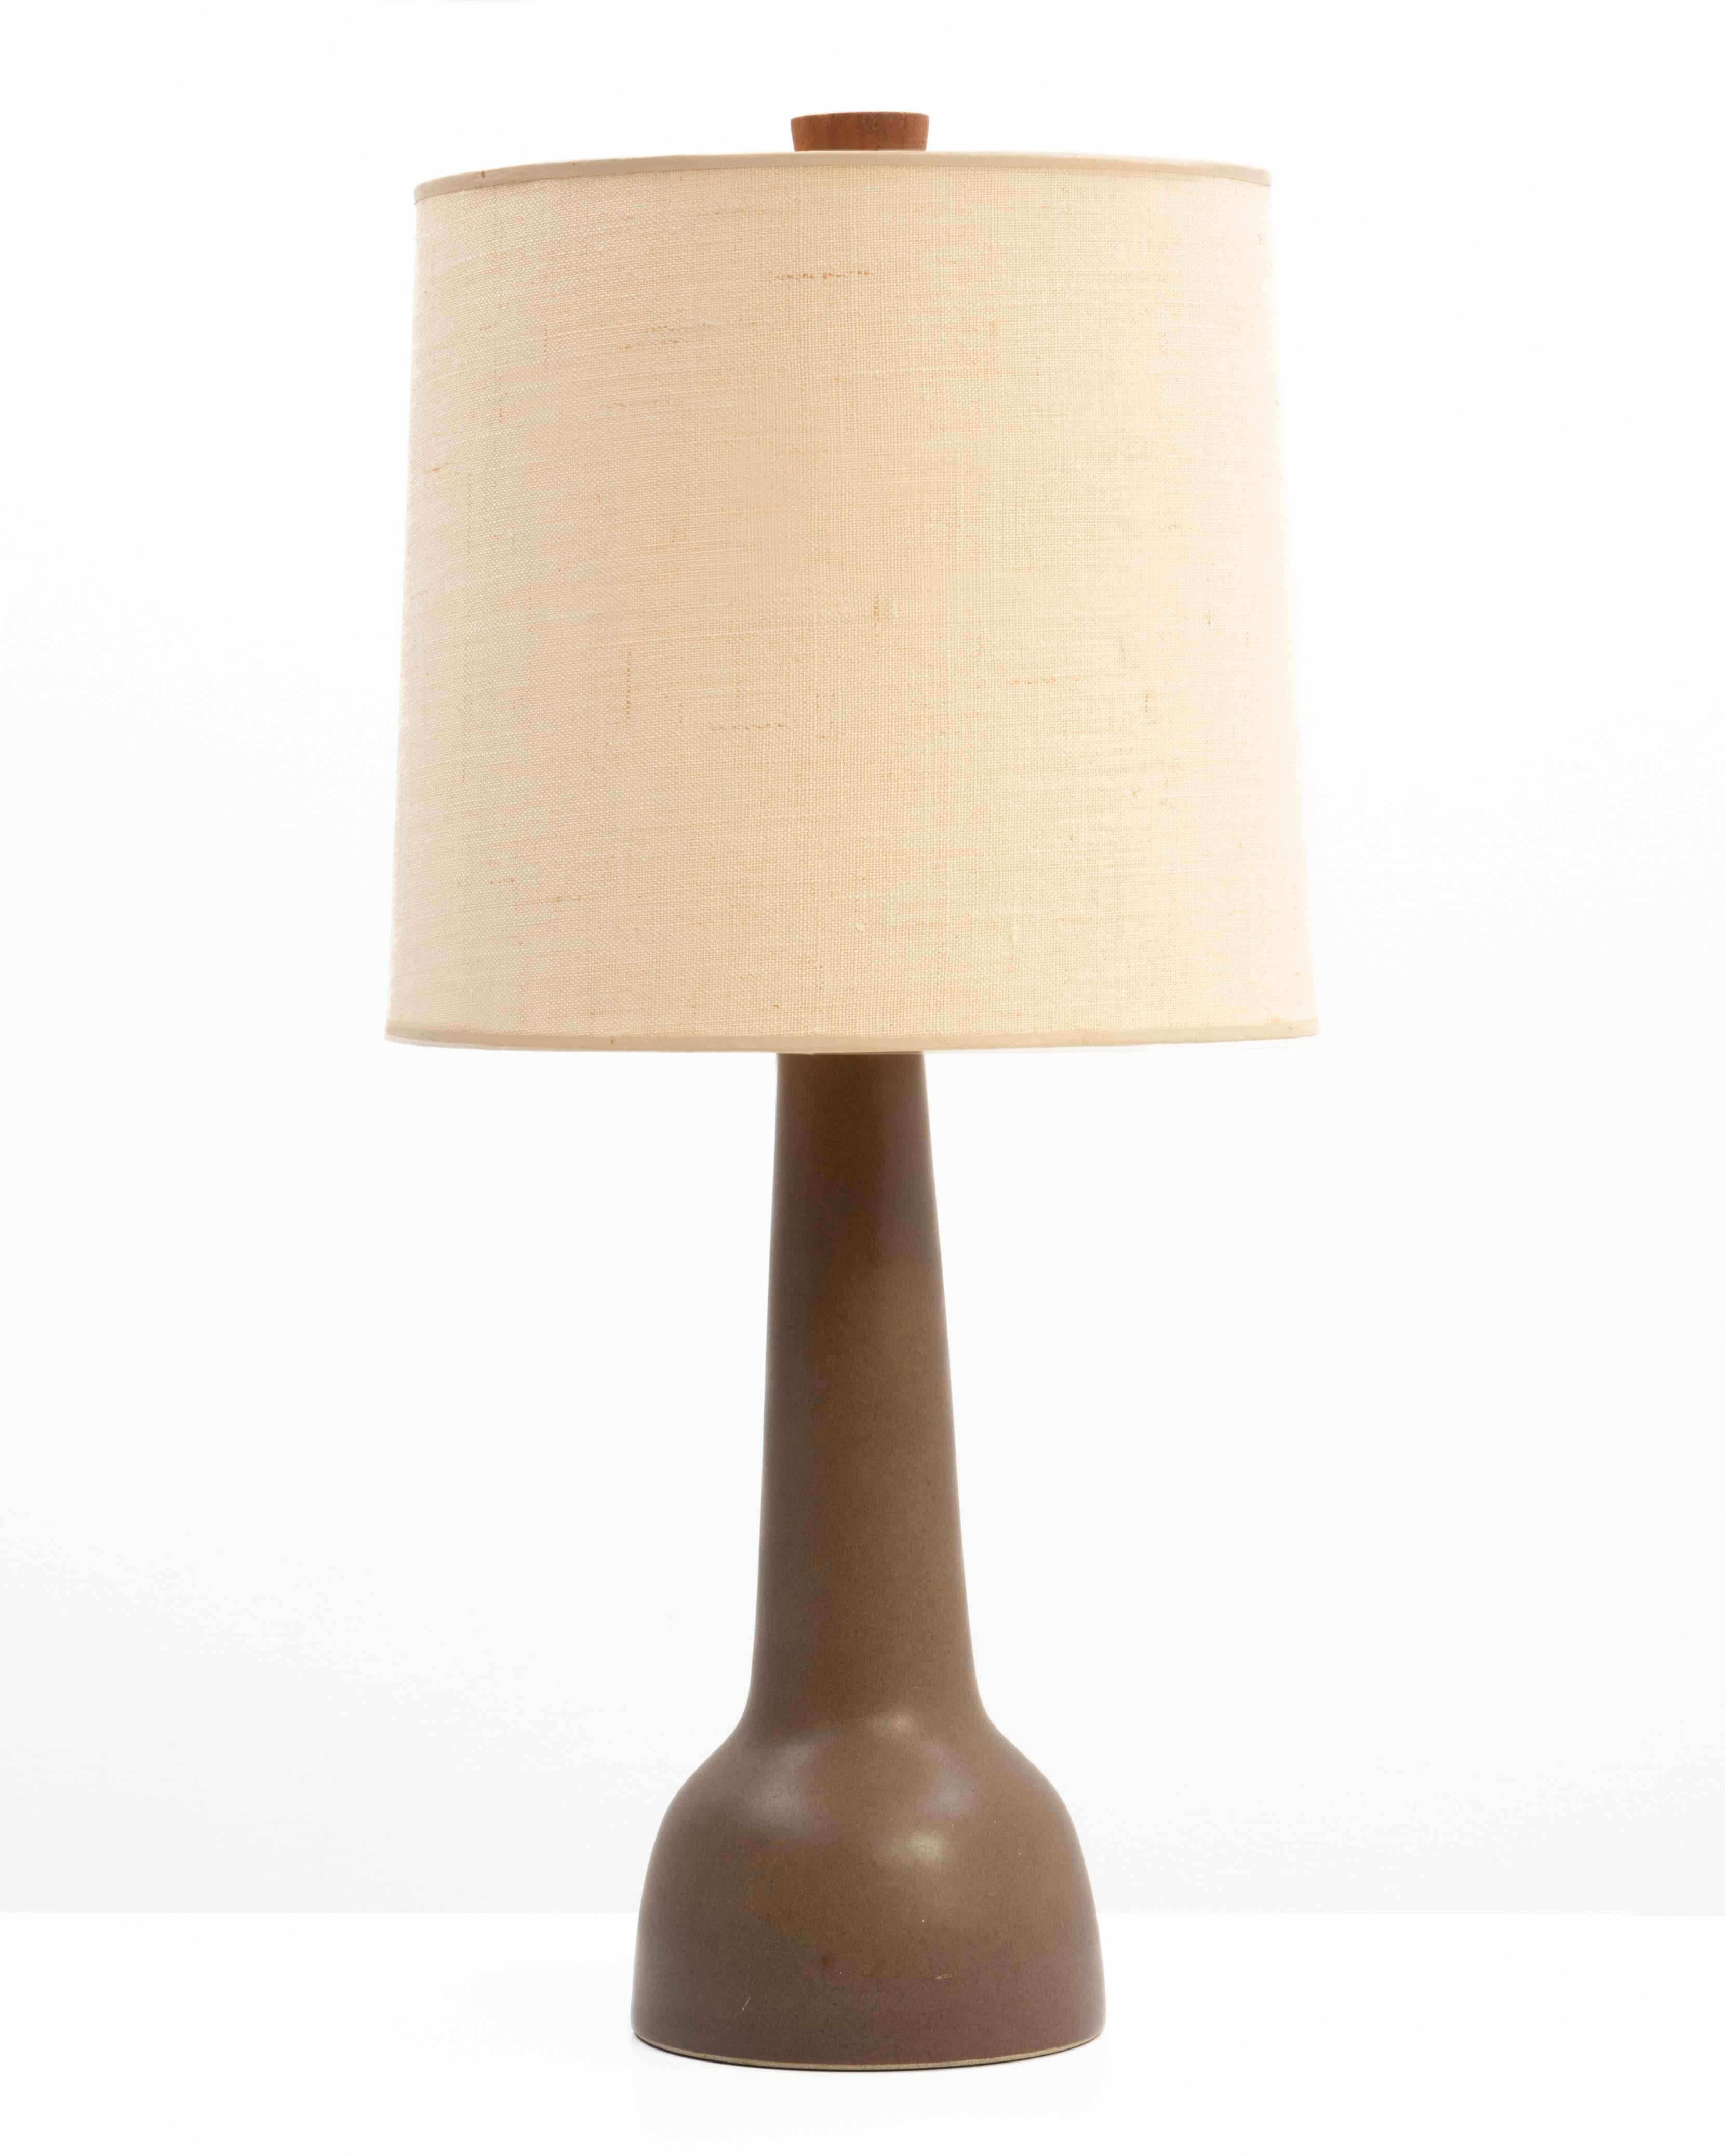 Lampe de table en céramique de Gordon & Jane Martz pour Marshall Studios, en émail brun mat finement moucheté. La lampe conserve l'abat-jour d'origine (un peu usé, il n'est pas inclus dans la vente) et l'épi de faîtage en noyer d'origine.